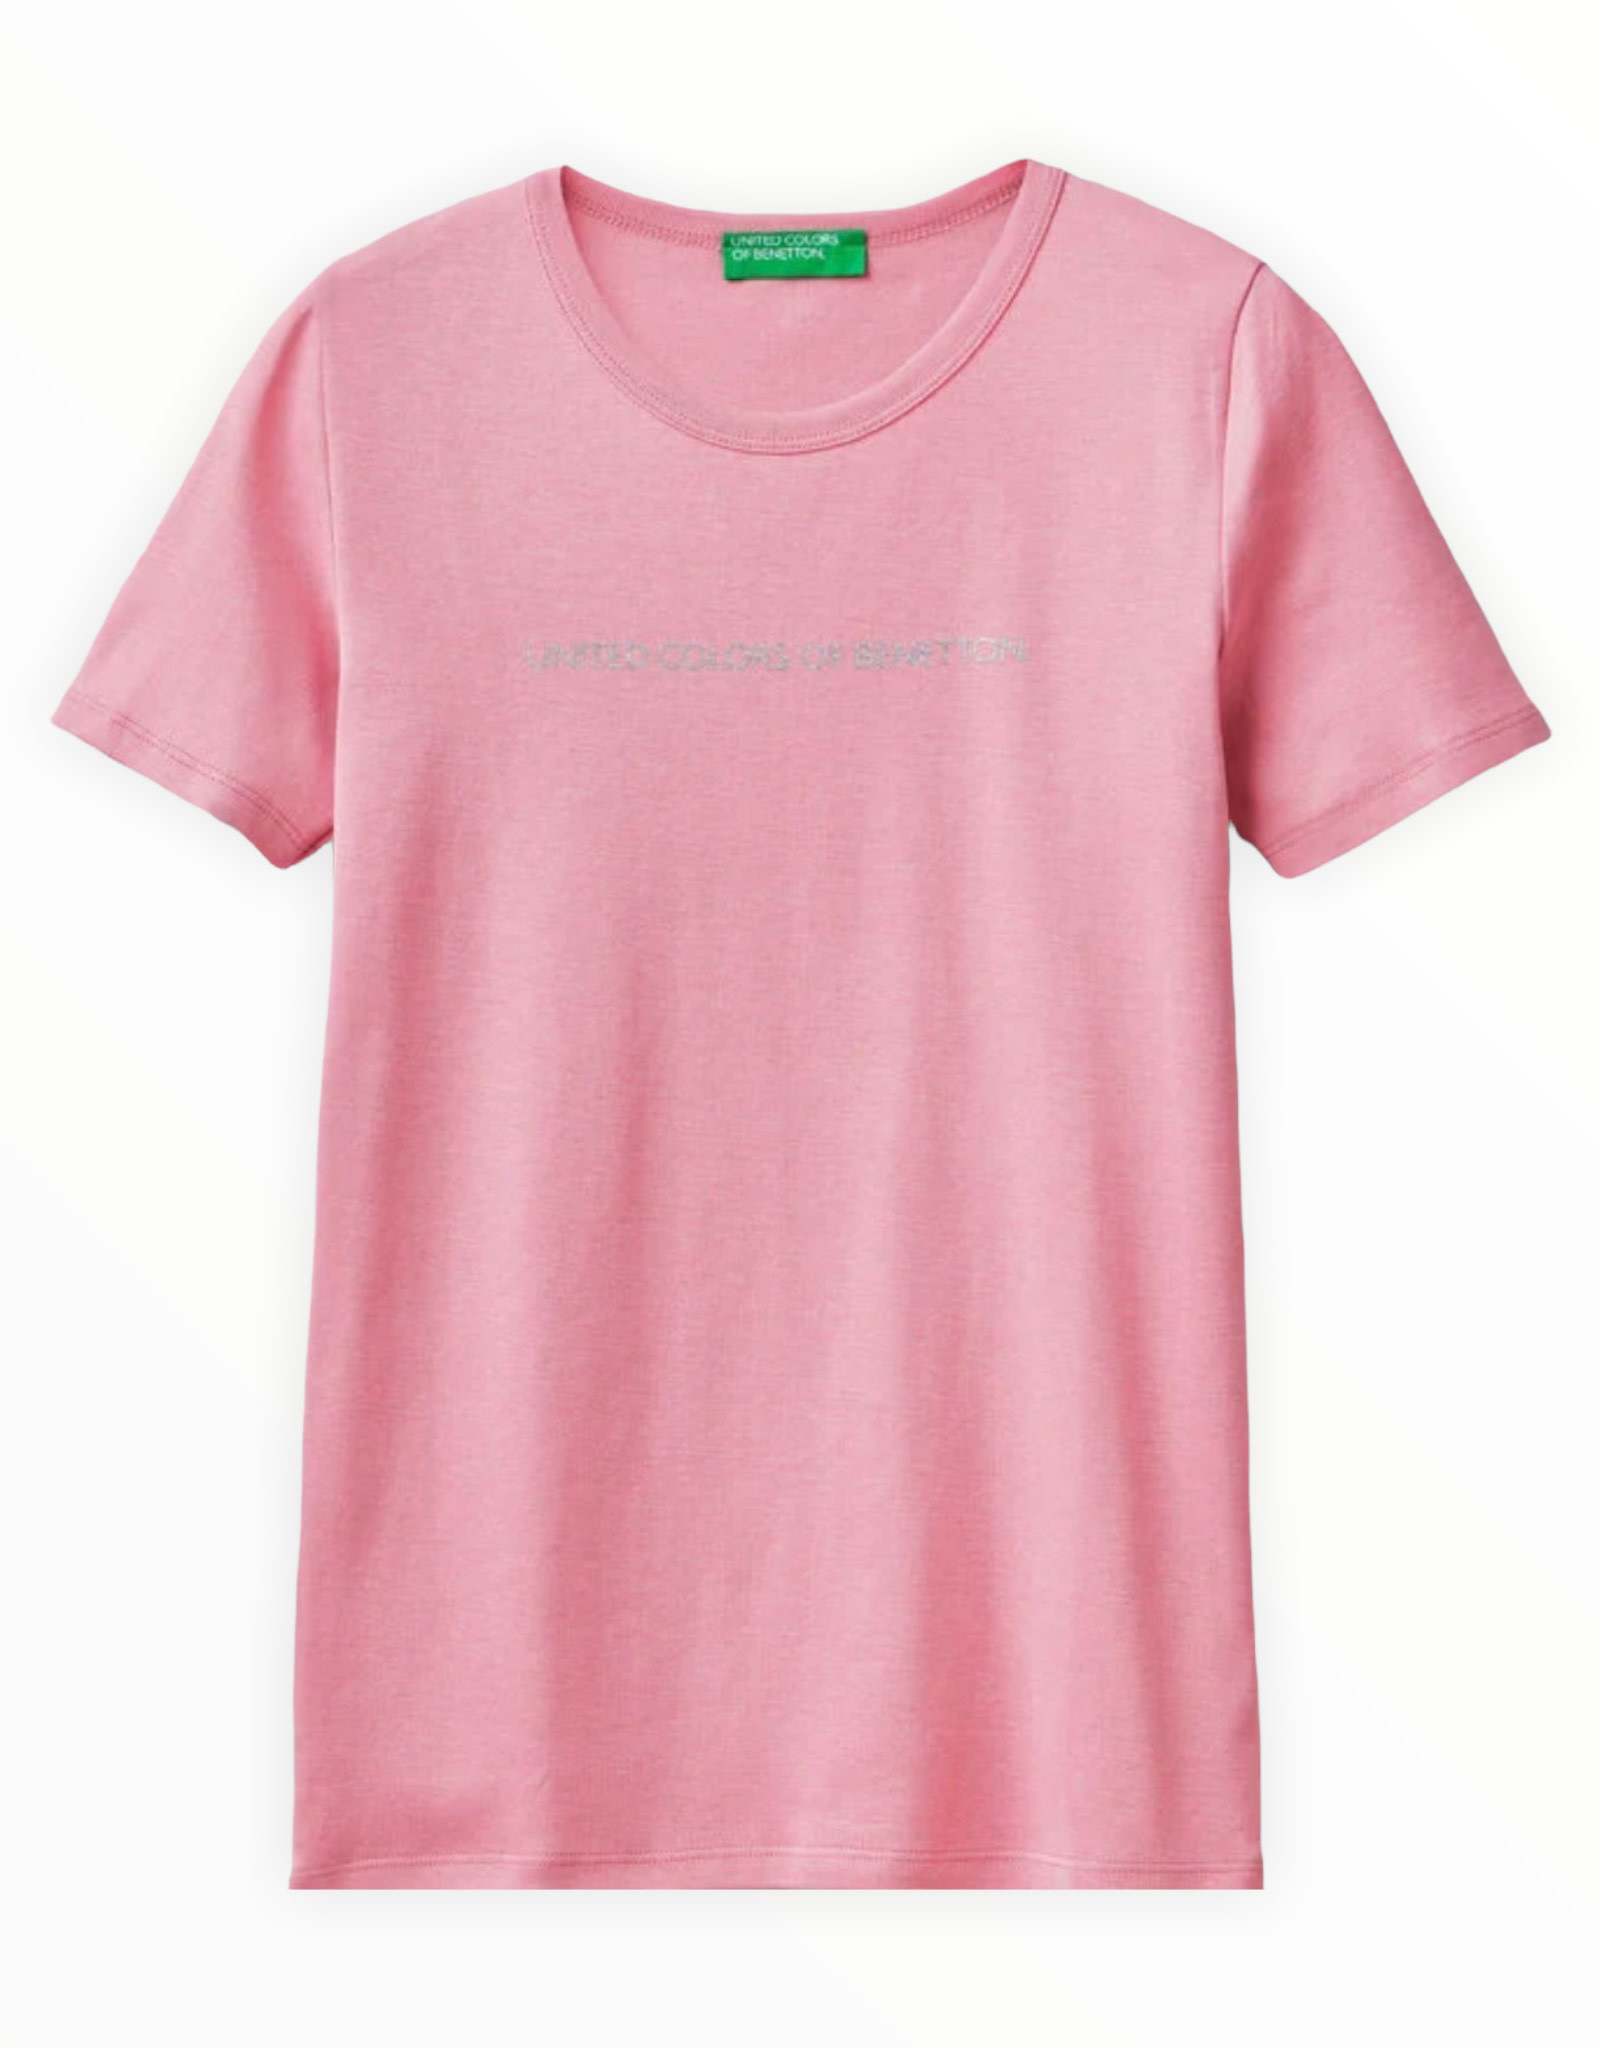 United Colors of Benetton T-Shirt in 100% Cotton with Glitter Print Logo -  Finaella Manila